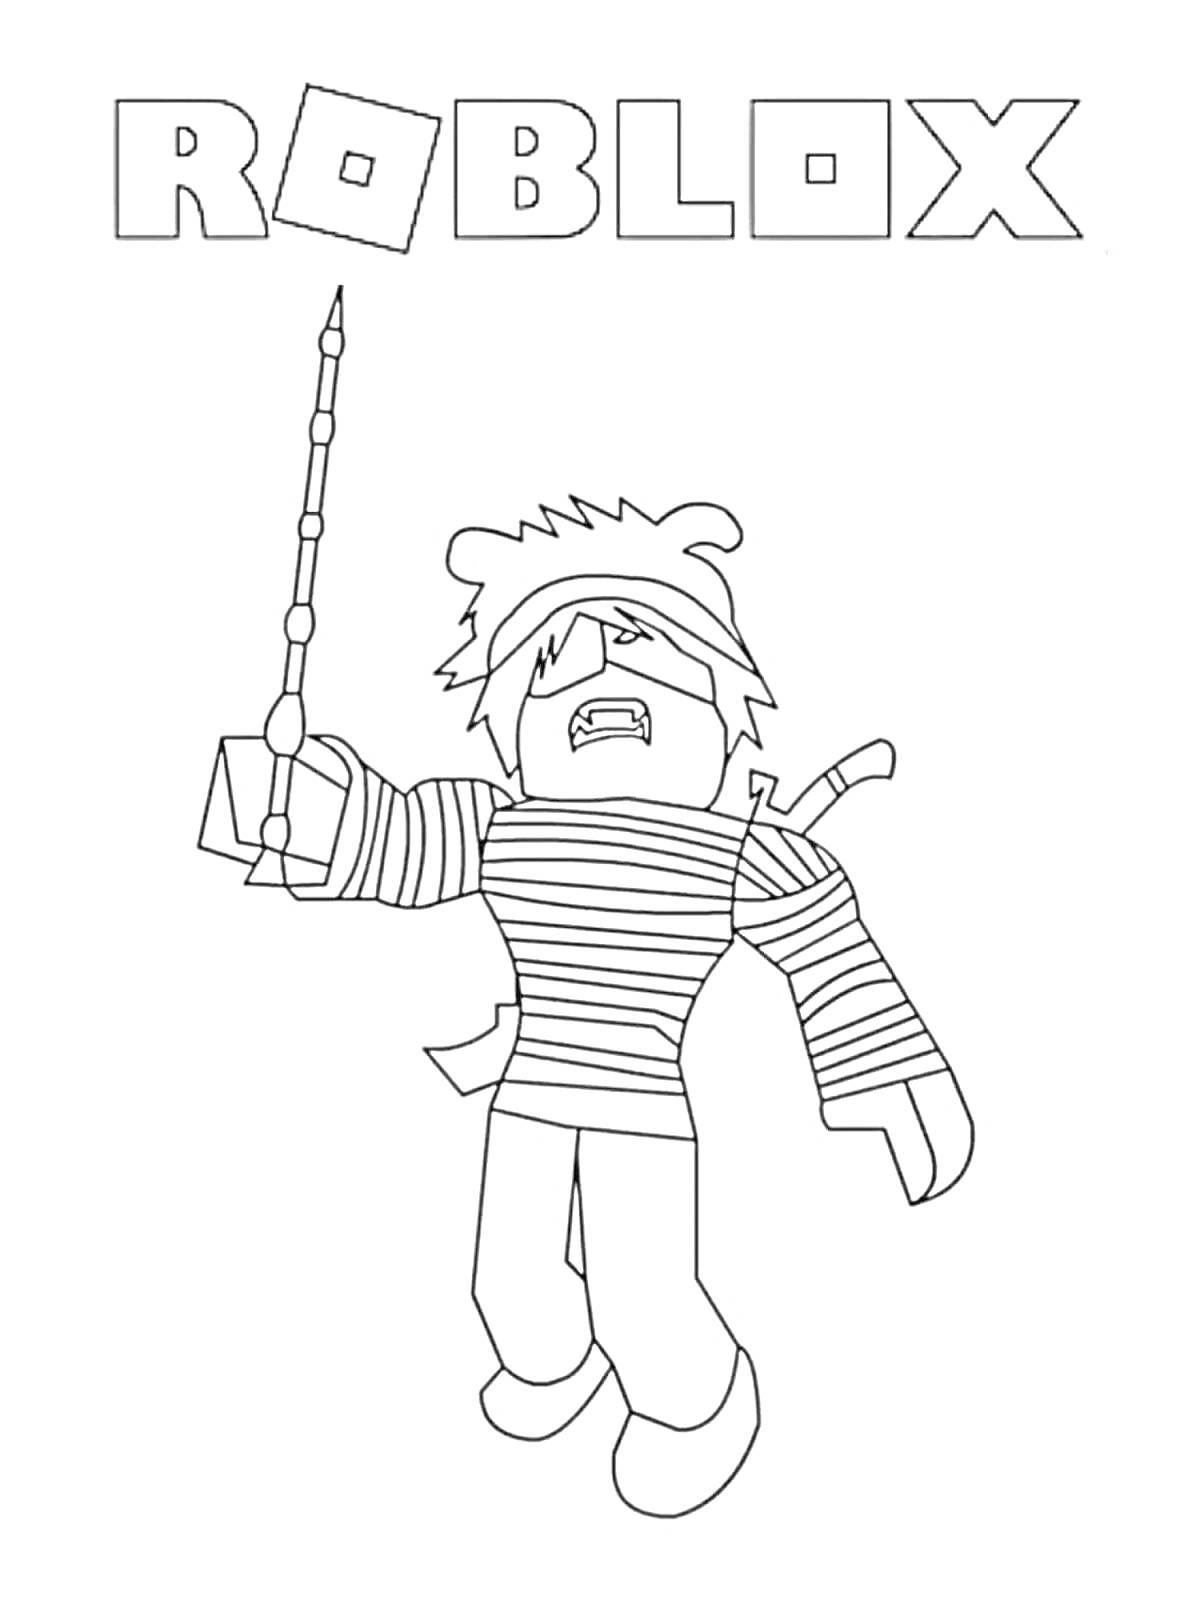 Roblox - персонаж в полосатой одежде с палкой в руке и мечом за спиной под надписью 